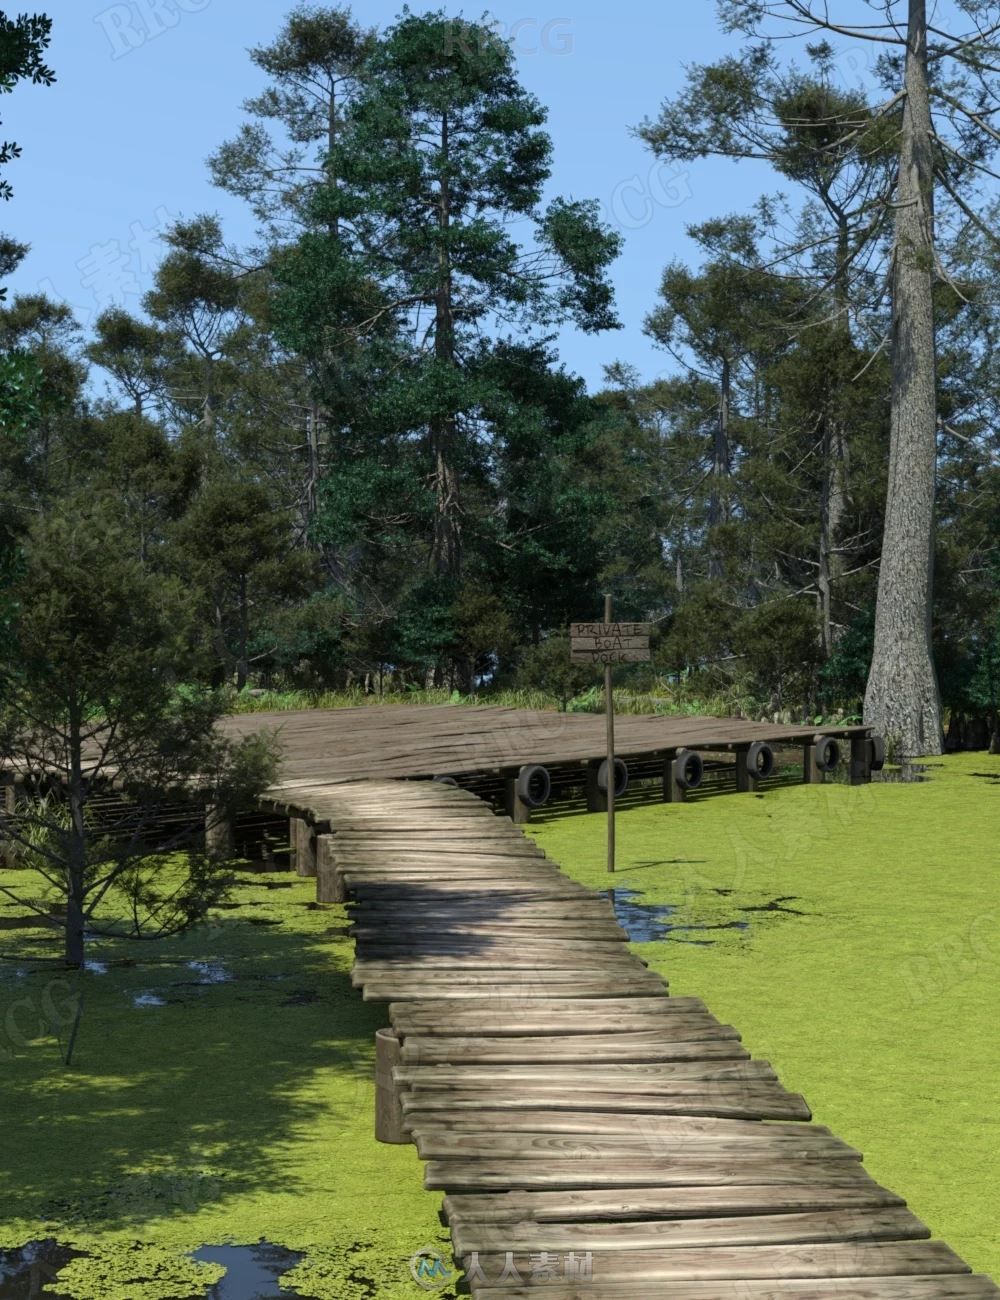 溪流土路潮湿森林场景环境3D模型合集